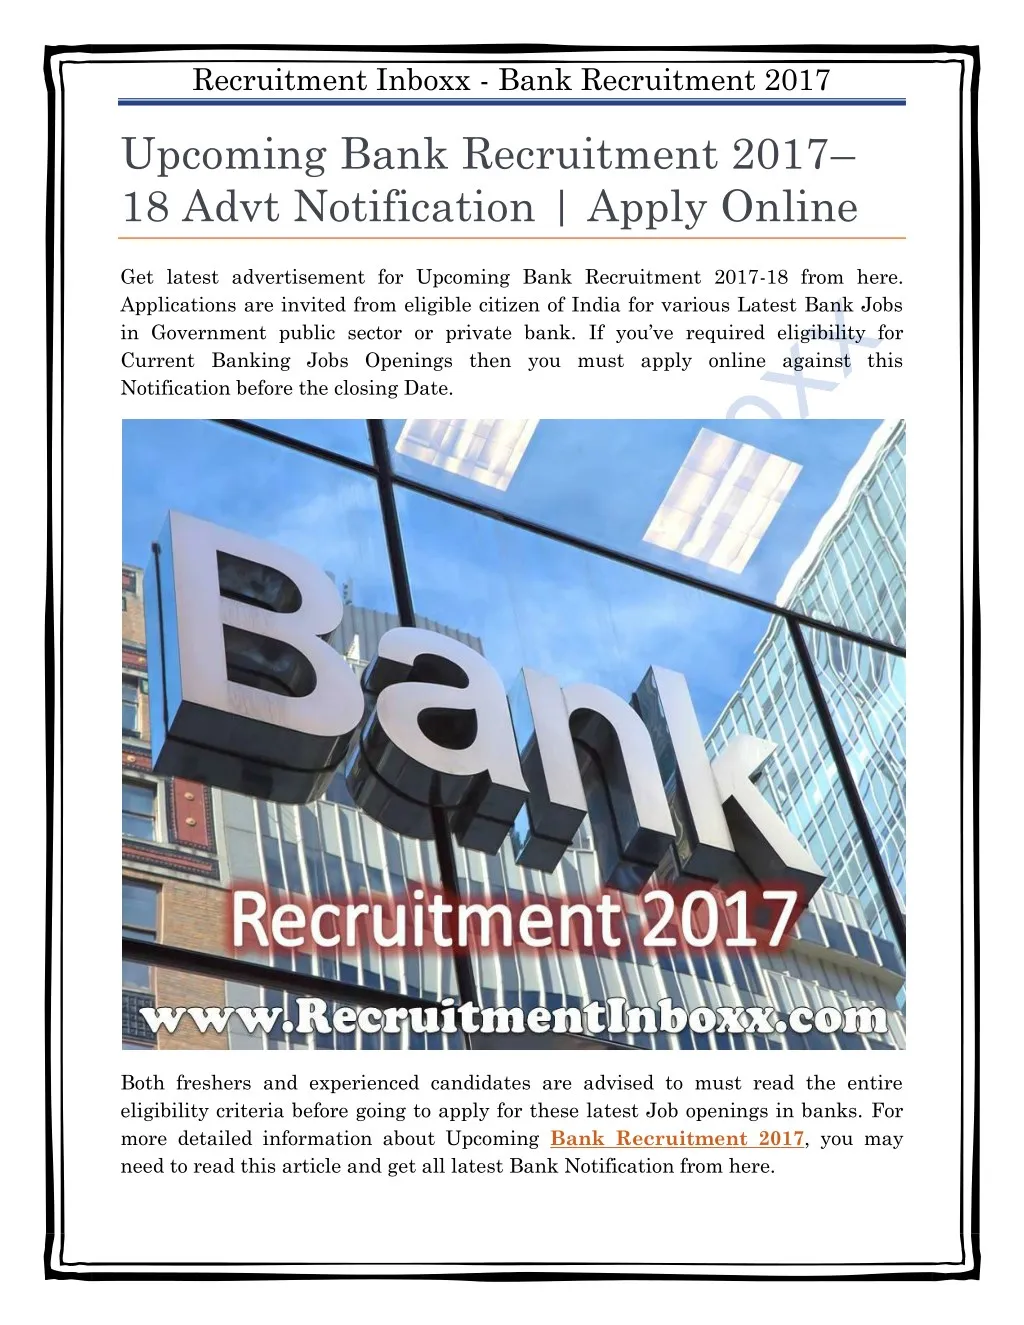 recruitment inboxx bank recruitment 2017